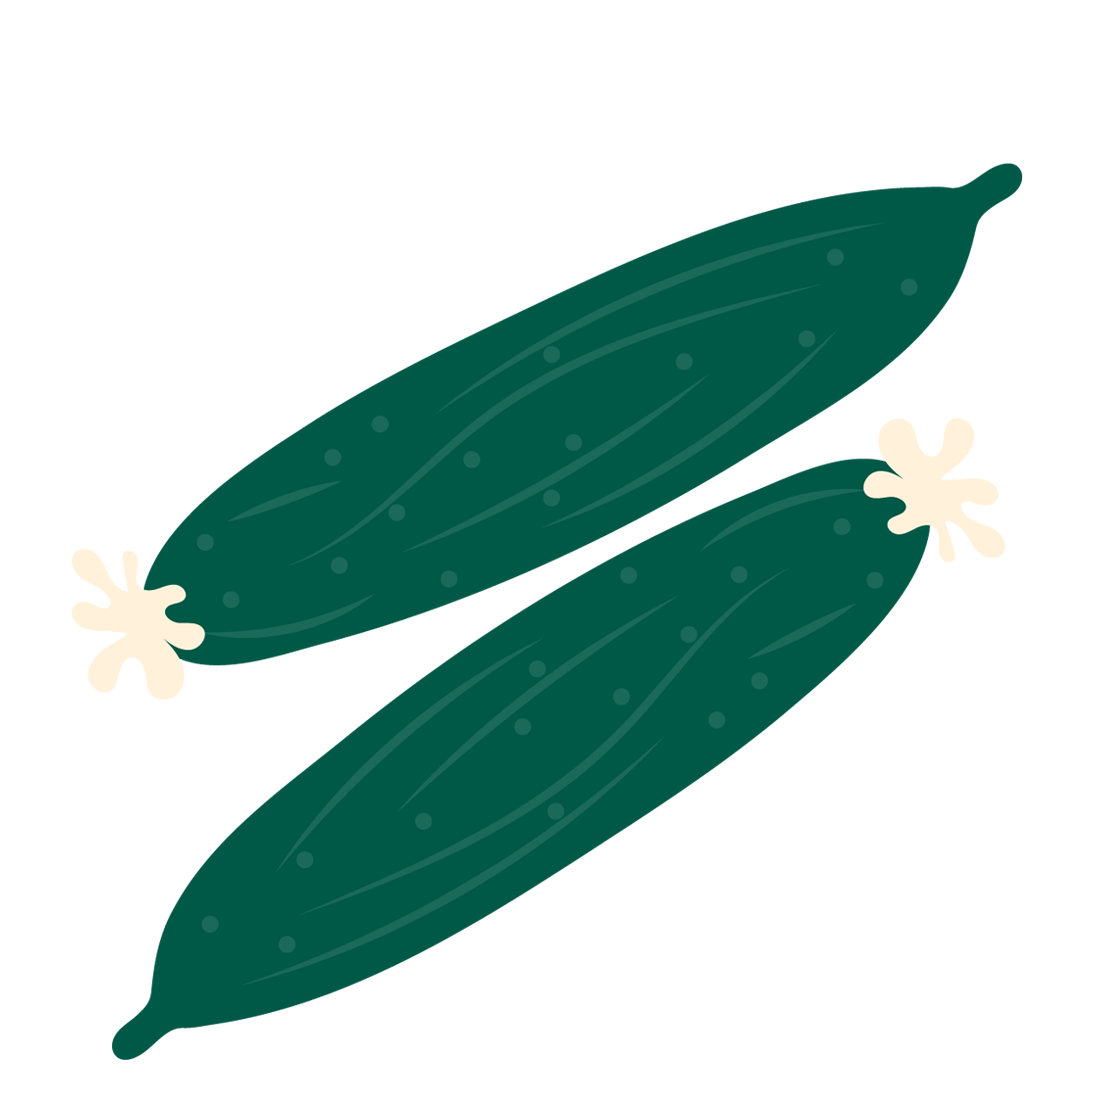 Komkommers